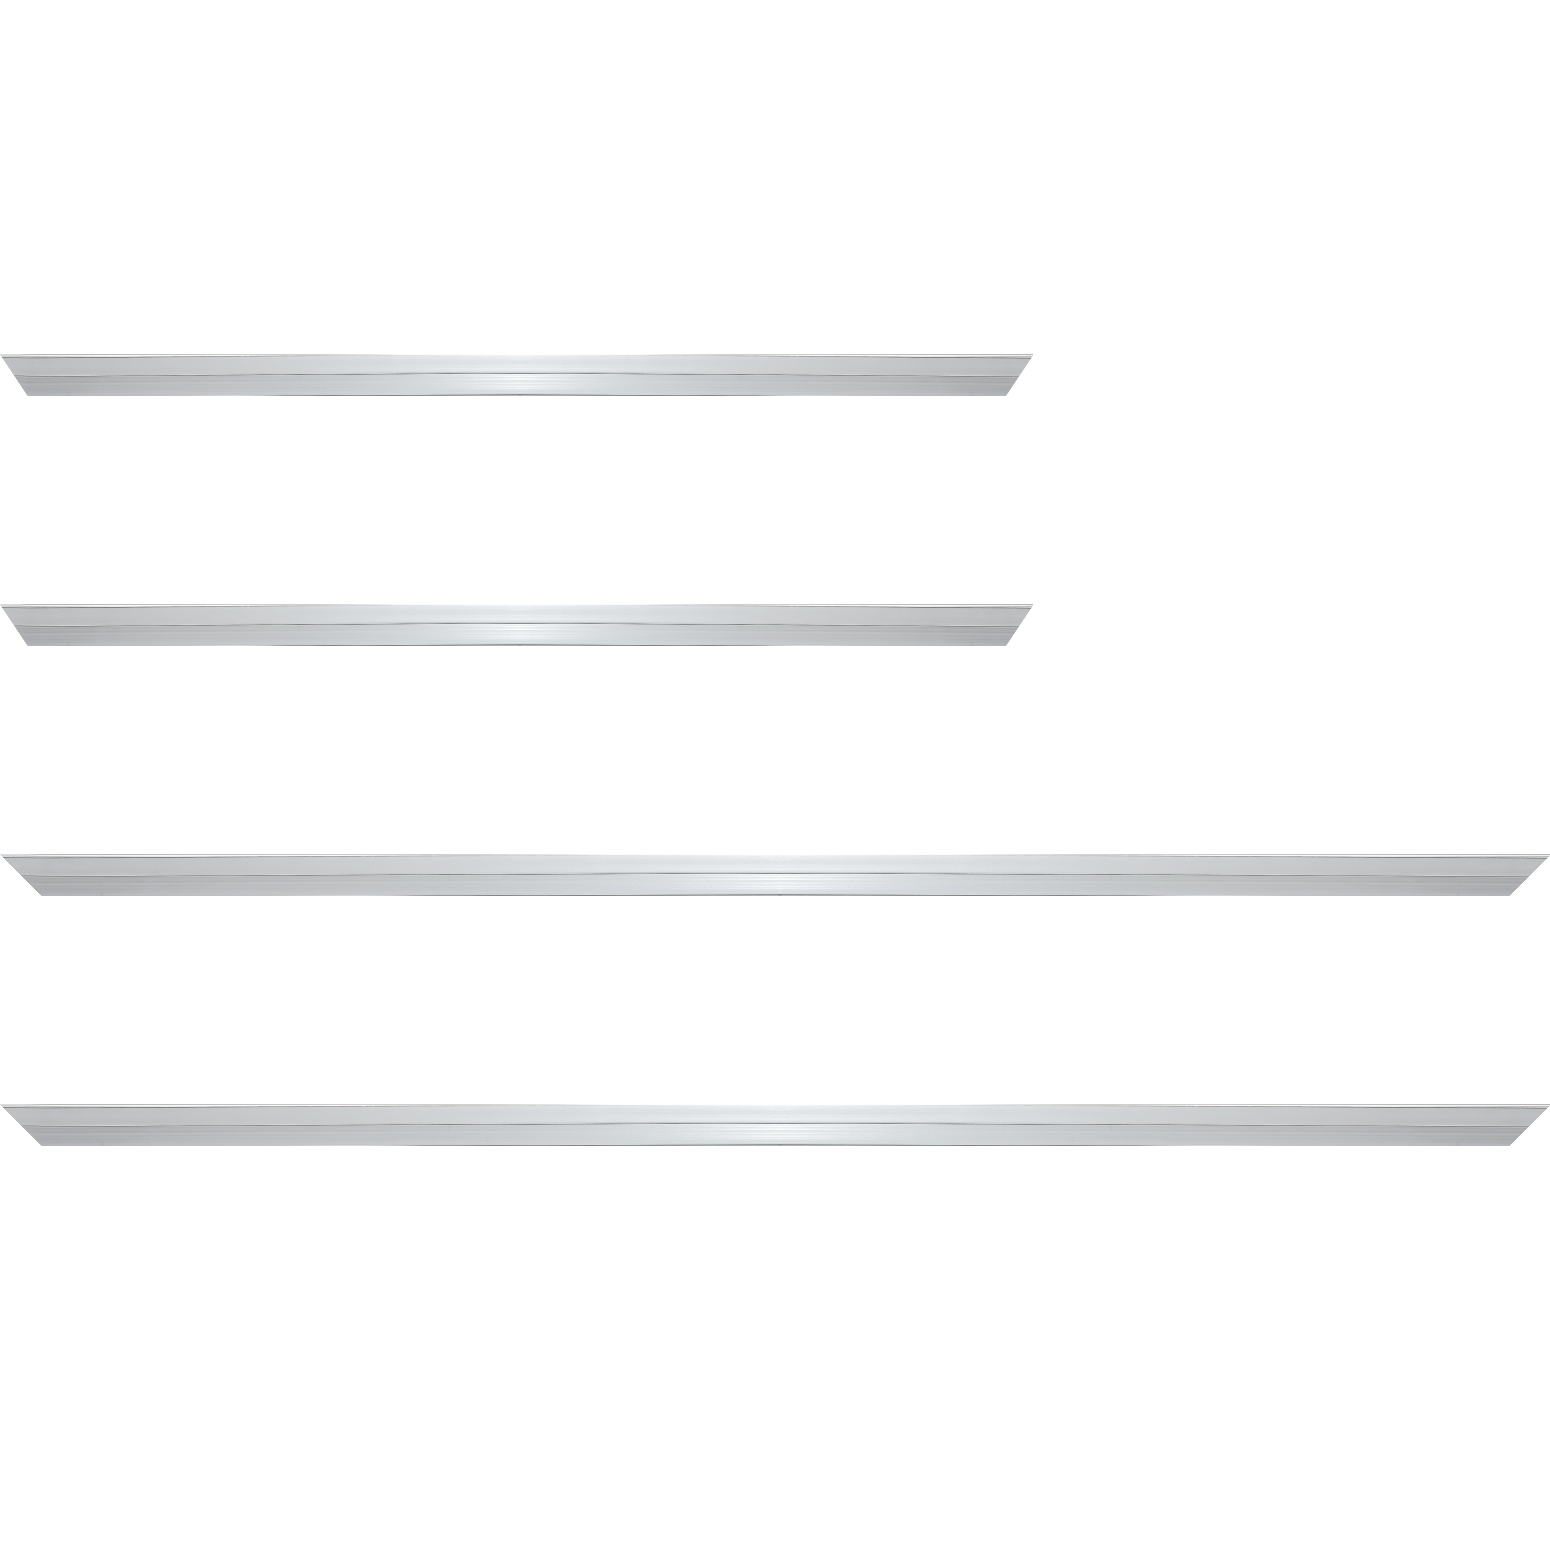 Baguette aluminium profil plat largeur 7mm, couleur argent poli ,(le sujet qui sera glissé dans le cadre sera en retrait de 9mm de la face du cadre assurant un effet très contemporain) mise en place du sujet rapide et simple: assemblage du cadre par double équerre à vis (livré avec le système d'accrochage qui se glisse dans le profilé) encadrement non assemblé,  livré avec son sachet d'accessoires - 28x34